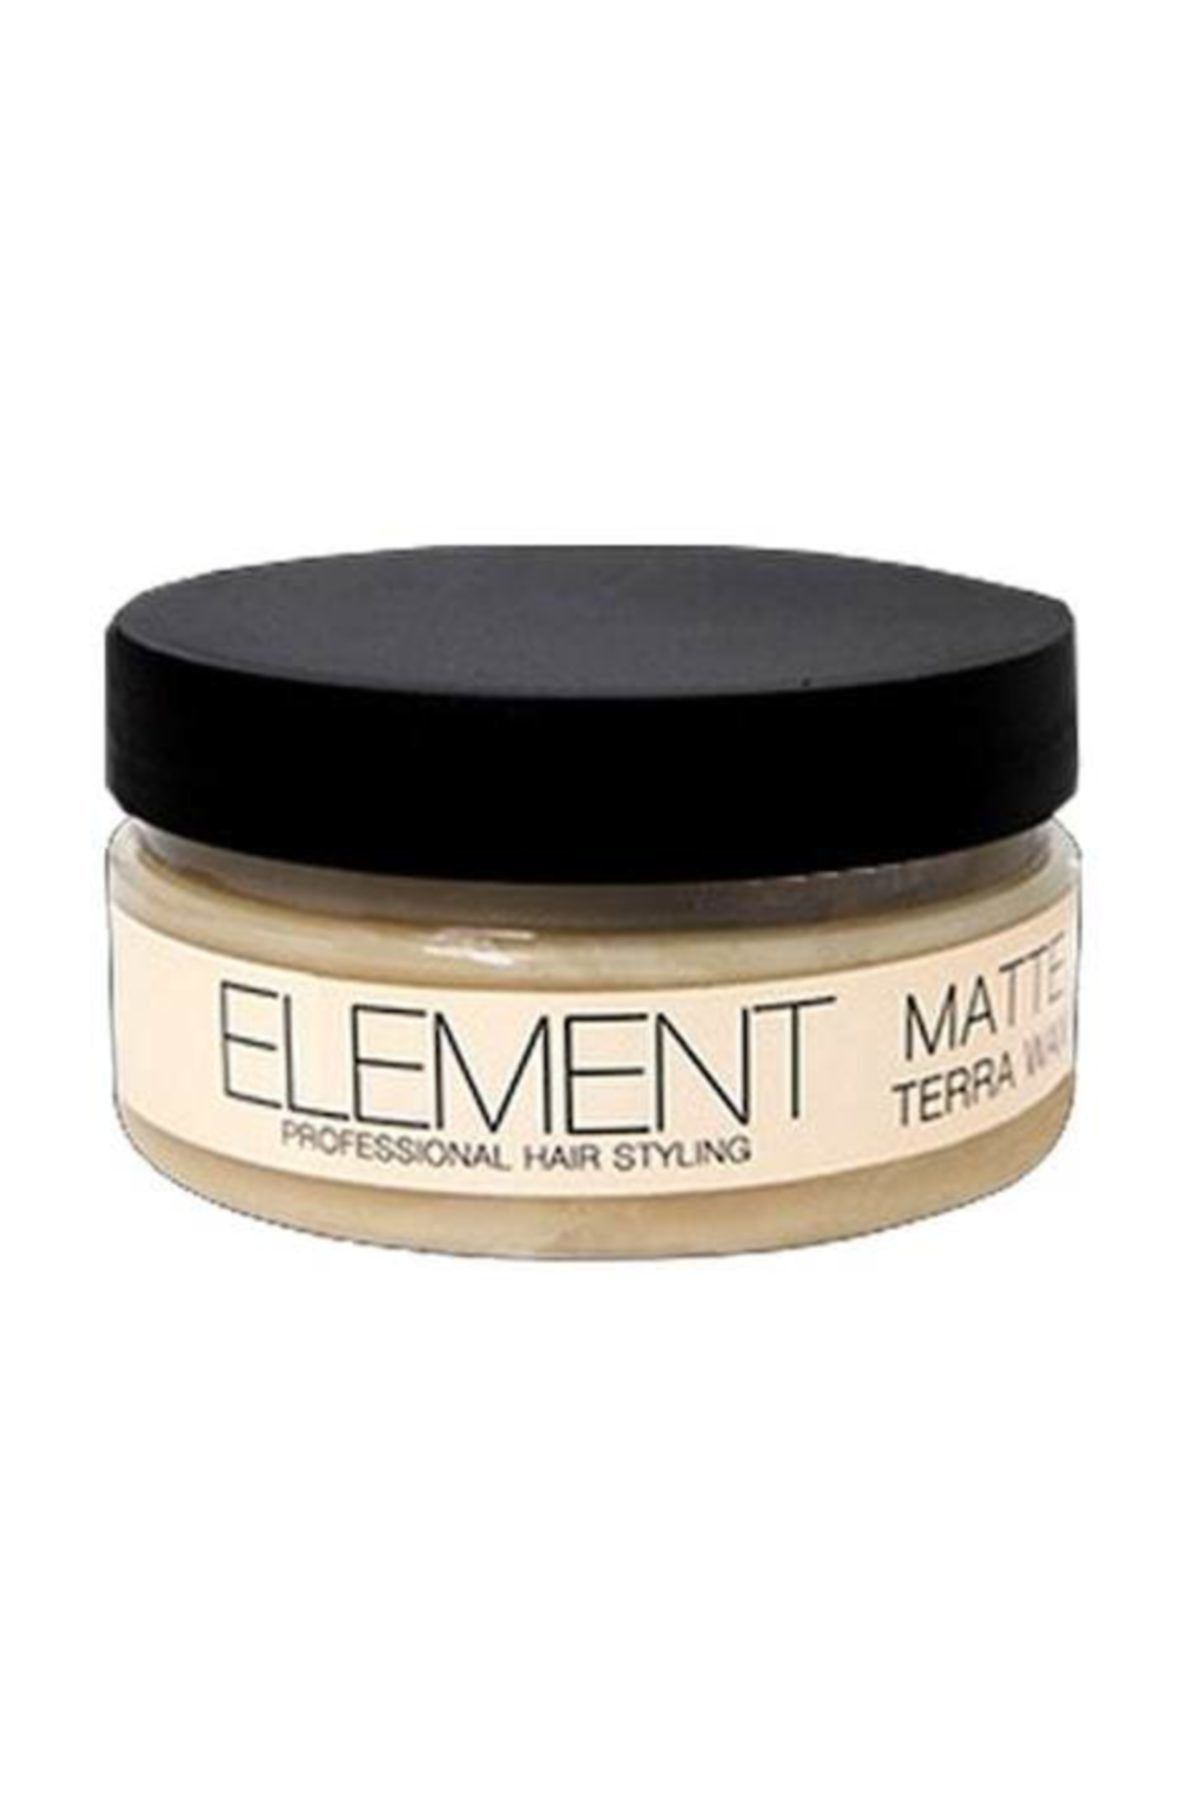 Element Matte Terra Wax 50 ml No 2 Mat